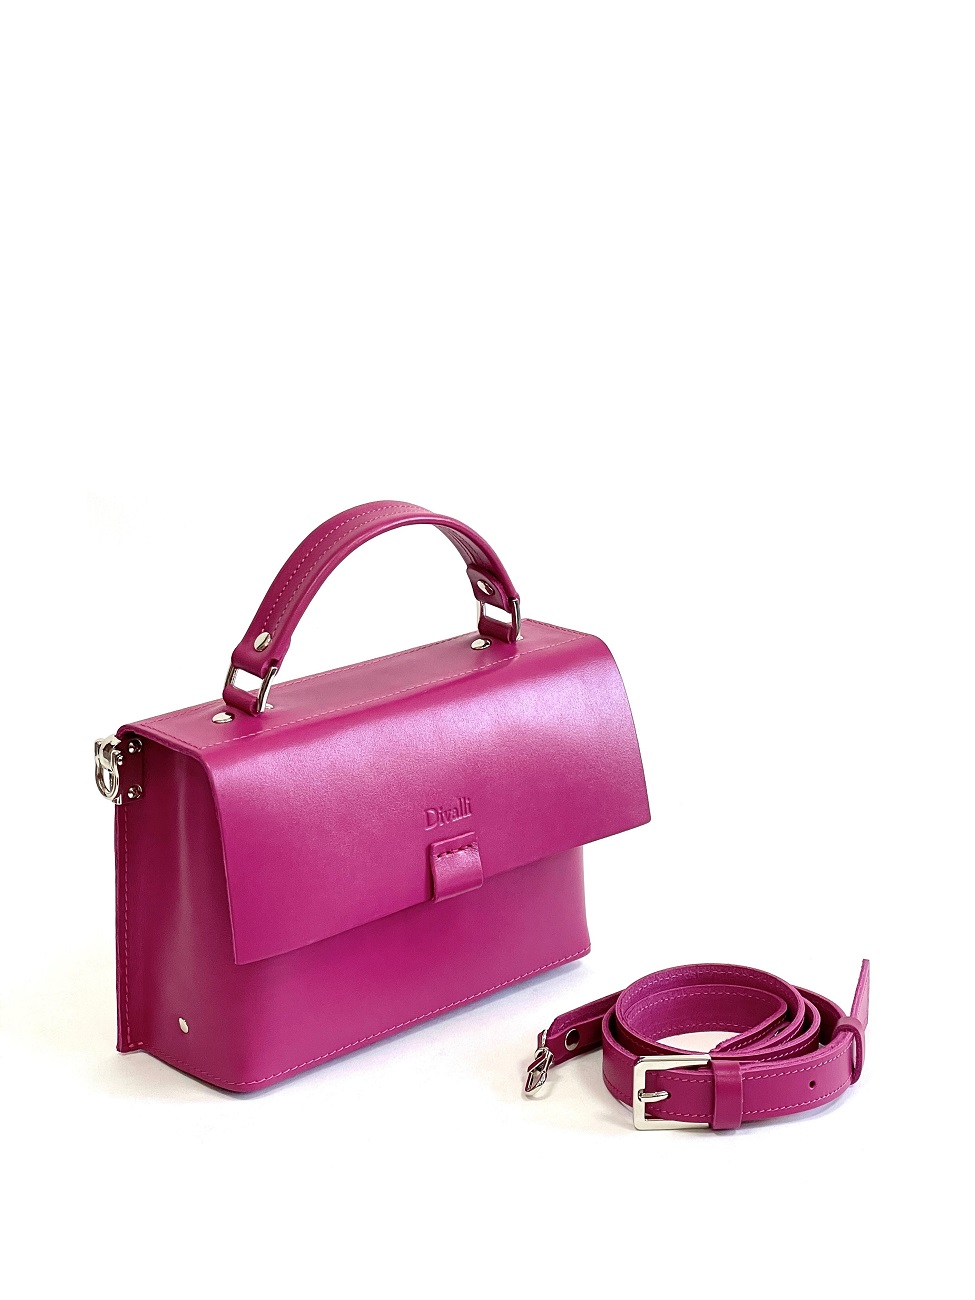 Женская кожаная сумка с ручкой розовая A037 fuchsia